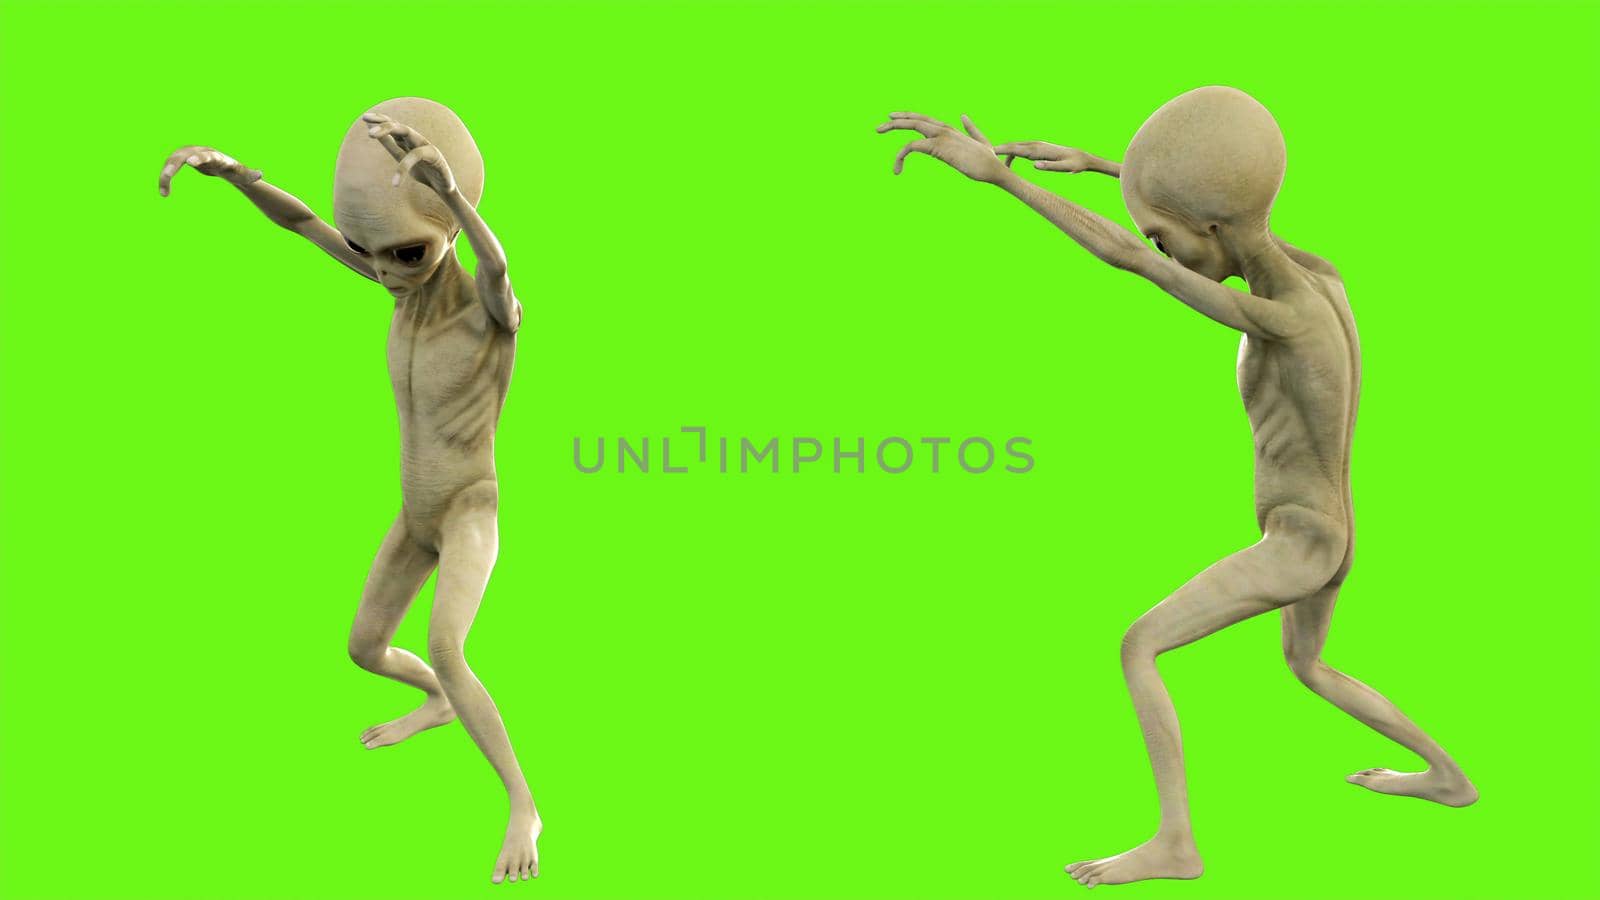 Alien walks like a zombie. 3D rendering by designprojects